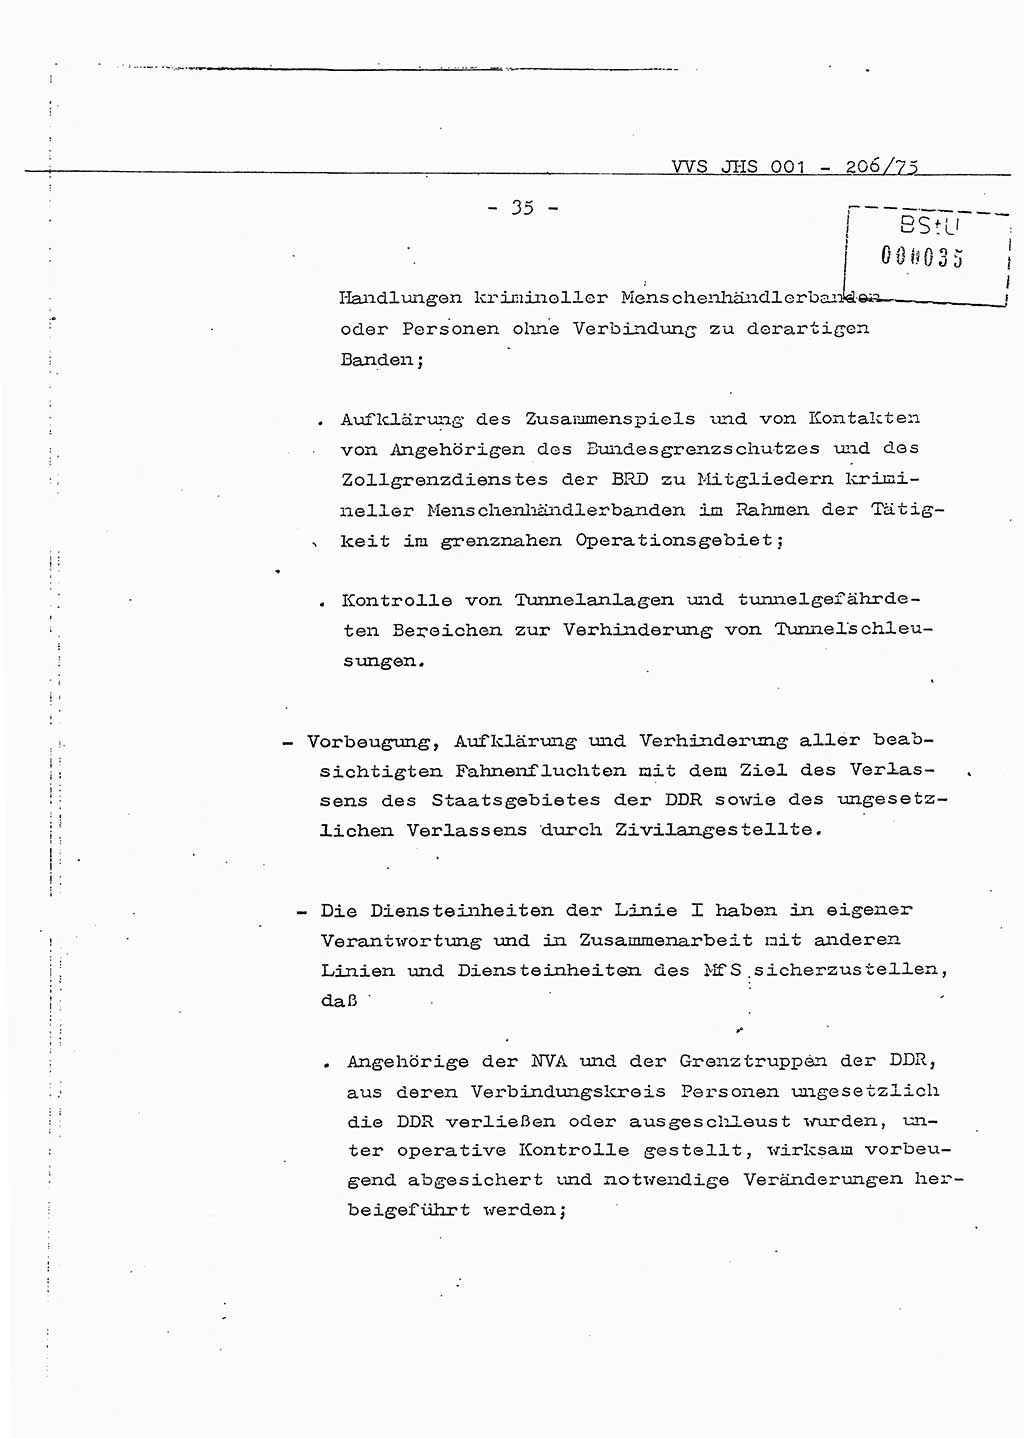 Dissertation Generalmajor Manfred Hummitzsch (Leiter der BV Leipzig), Generalmajor Heinz Fiedler (HA Ⅵ), Oberst Rolf Fister (HA Ⅸ), Ministerium für Staatssicherheit (MfS) [Deutsche Demokratische Republik (DDR)], Juristische Hochschule (JHS), Vertrauliche Verschlußsache (VVS) 001-206/75, Potsdam 1975, Seite 35 (Diss. MfS DDR JHS VVS 001-206/75 1975, S. 35)